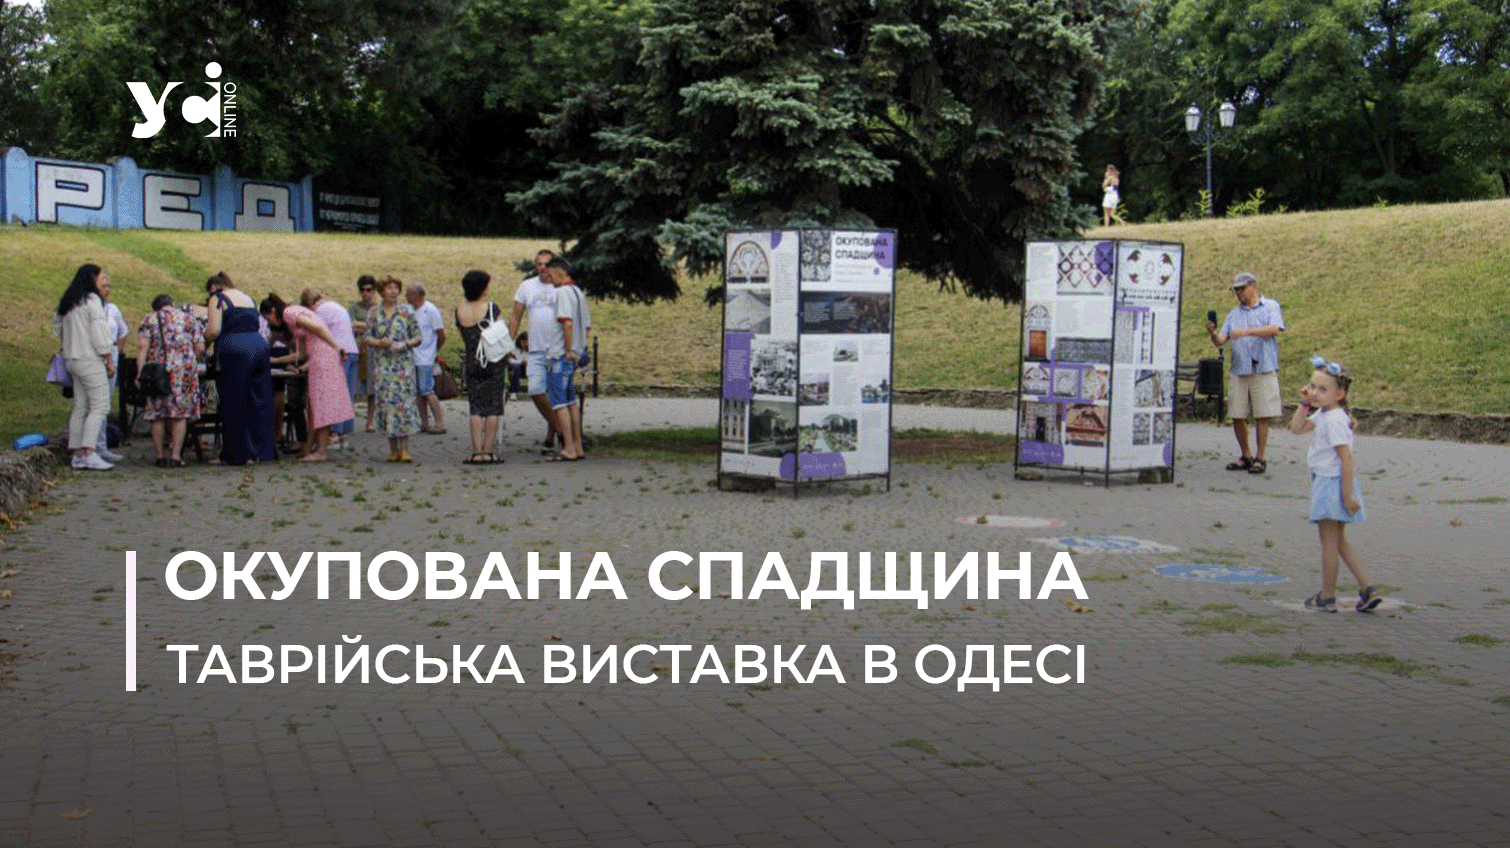 «Окупована спадщина»: мешканці Херсонщини привезли до Одеси виставку (фото, відео) «фото»